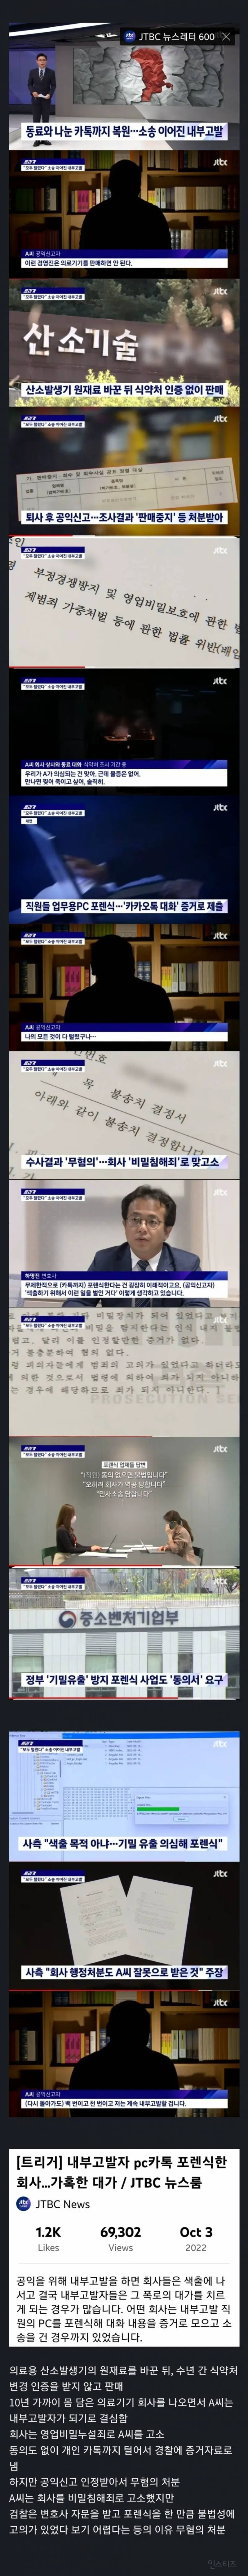 내부고발자 pc카톡 포렌식한 회사…  엠봉 mbong.kr